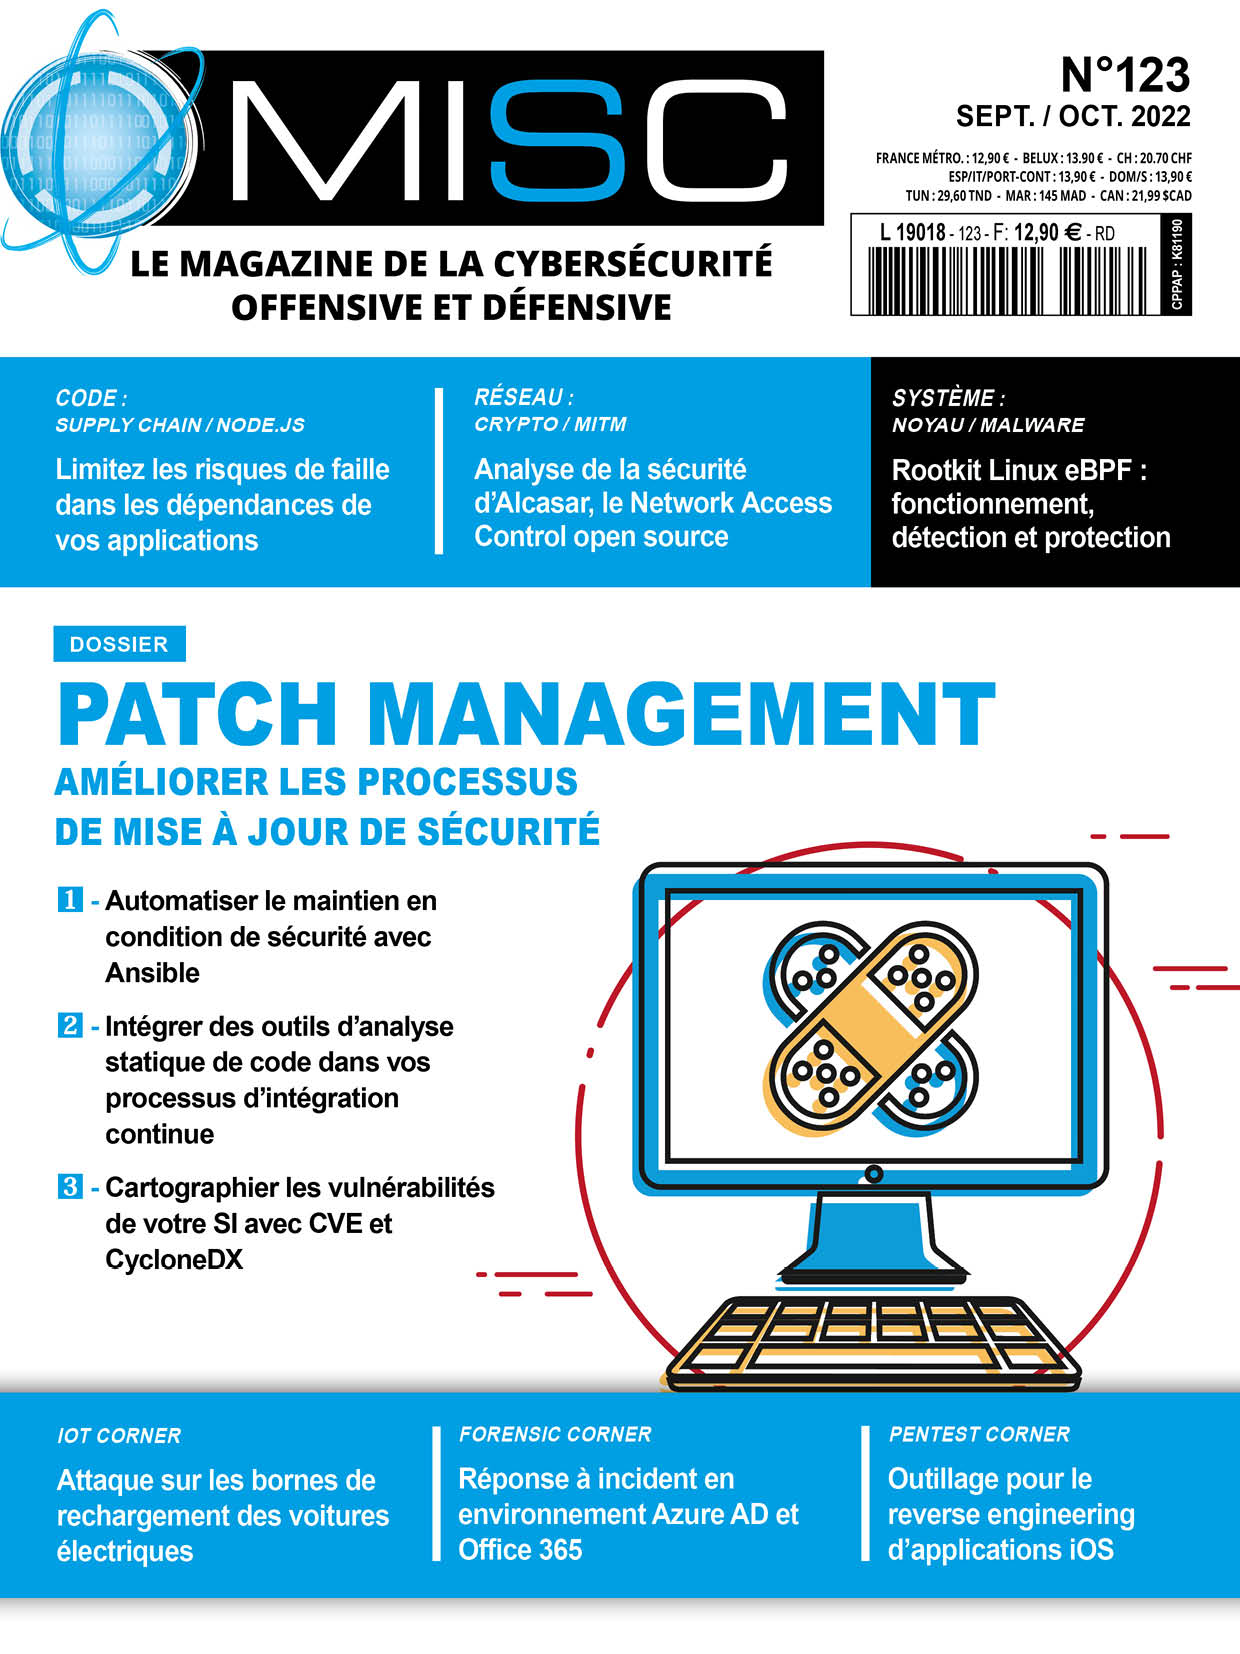 Patch management - Améliorer les processus de mise à jour de sécurité 